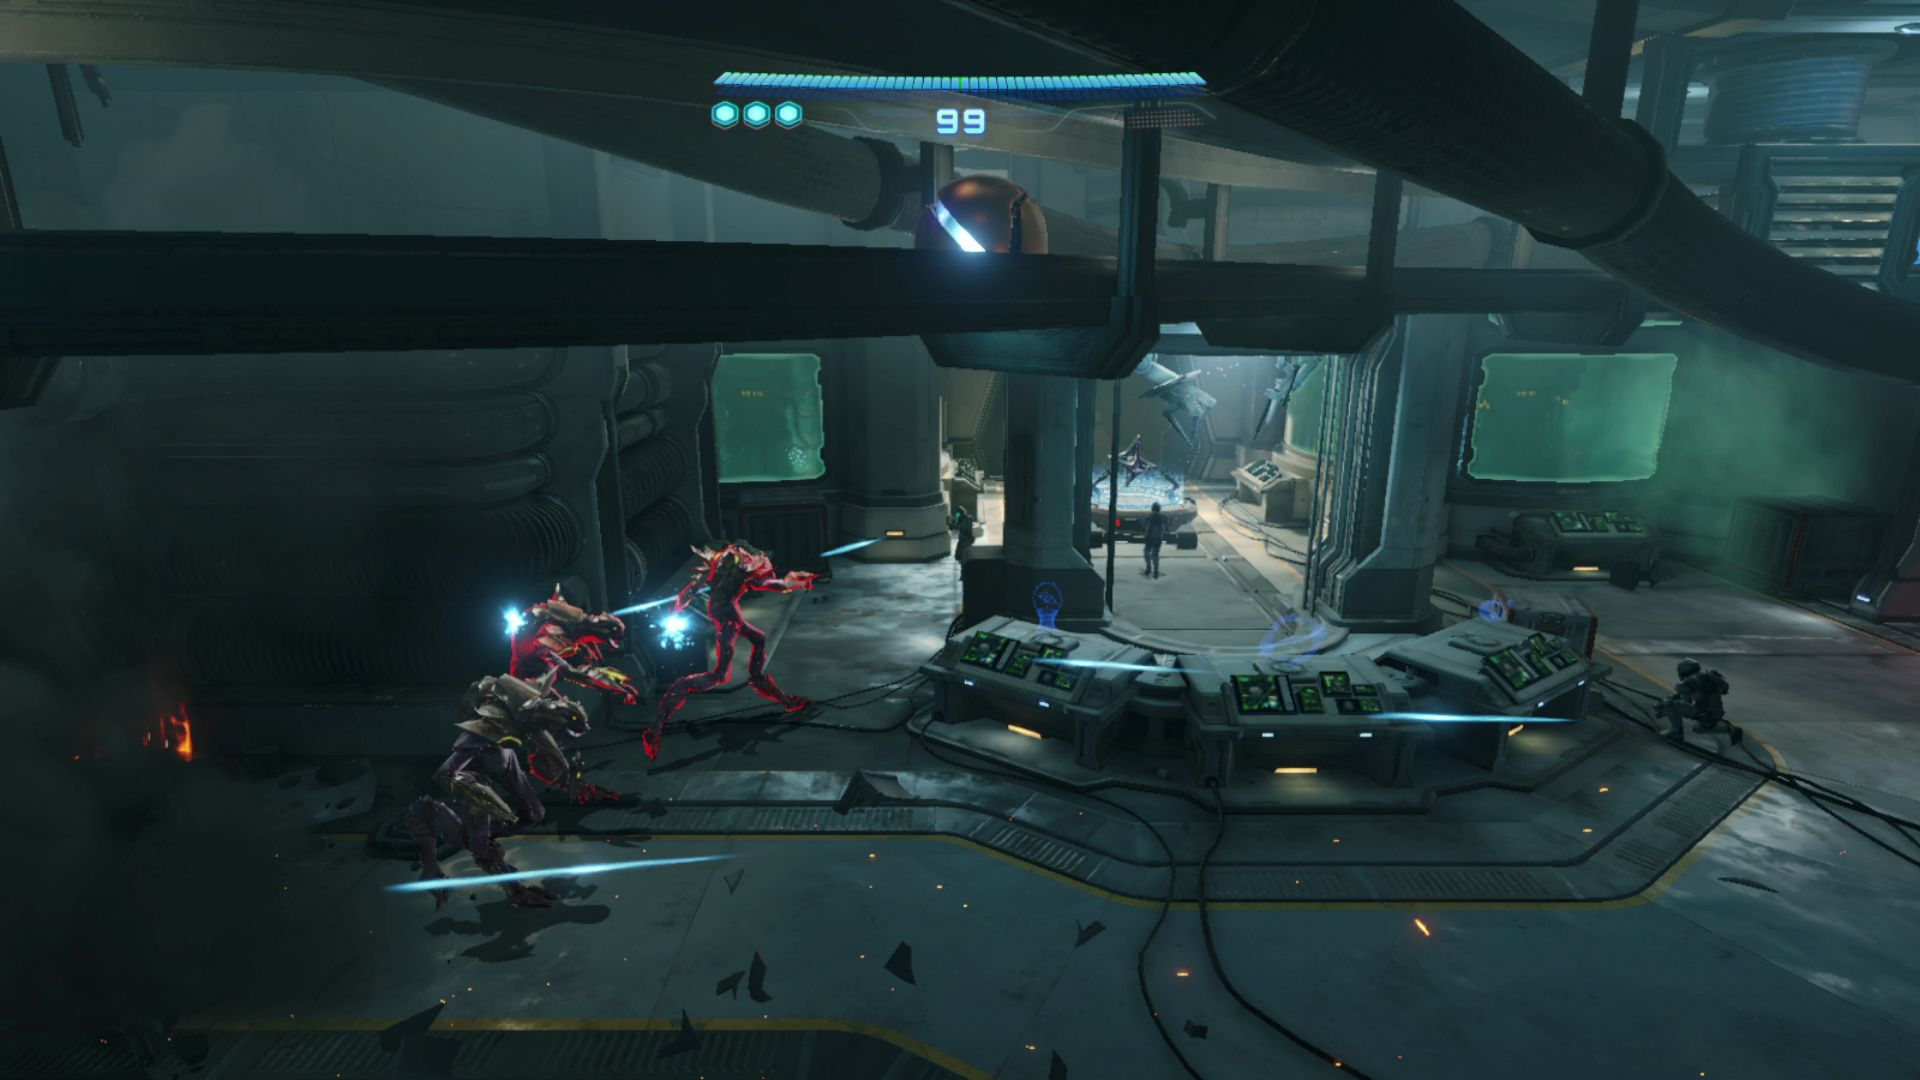 Metroid prime 4 beyond screenshot 10 8